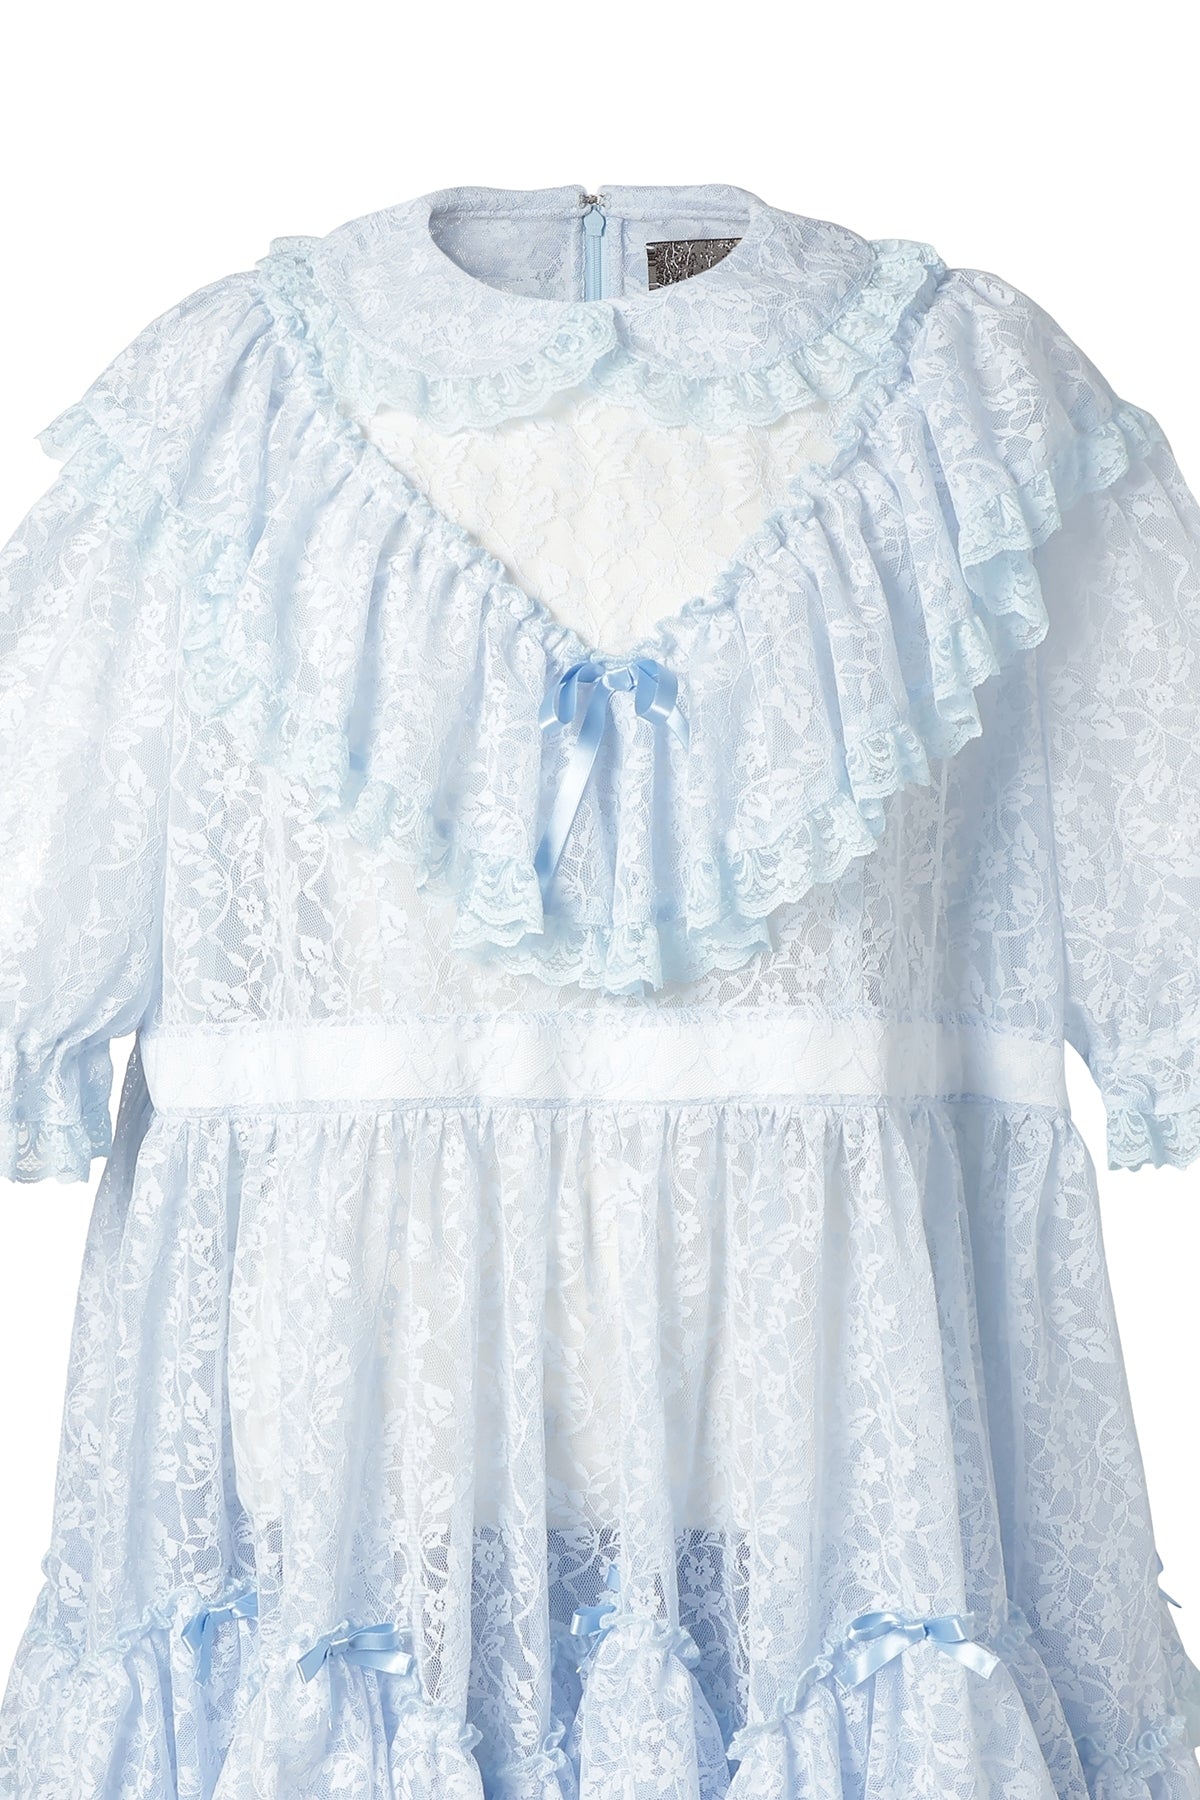 Oversized Lolita Lace / Baby Blue｜MIKIOSAKABE&JennyFax公式ストア 